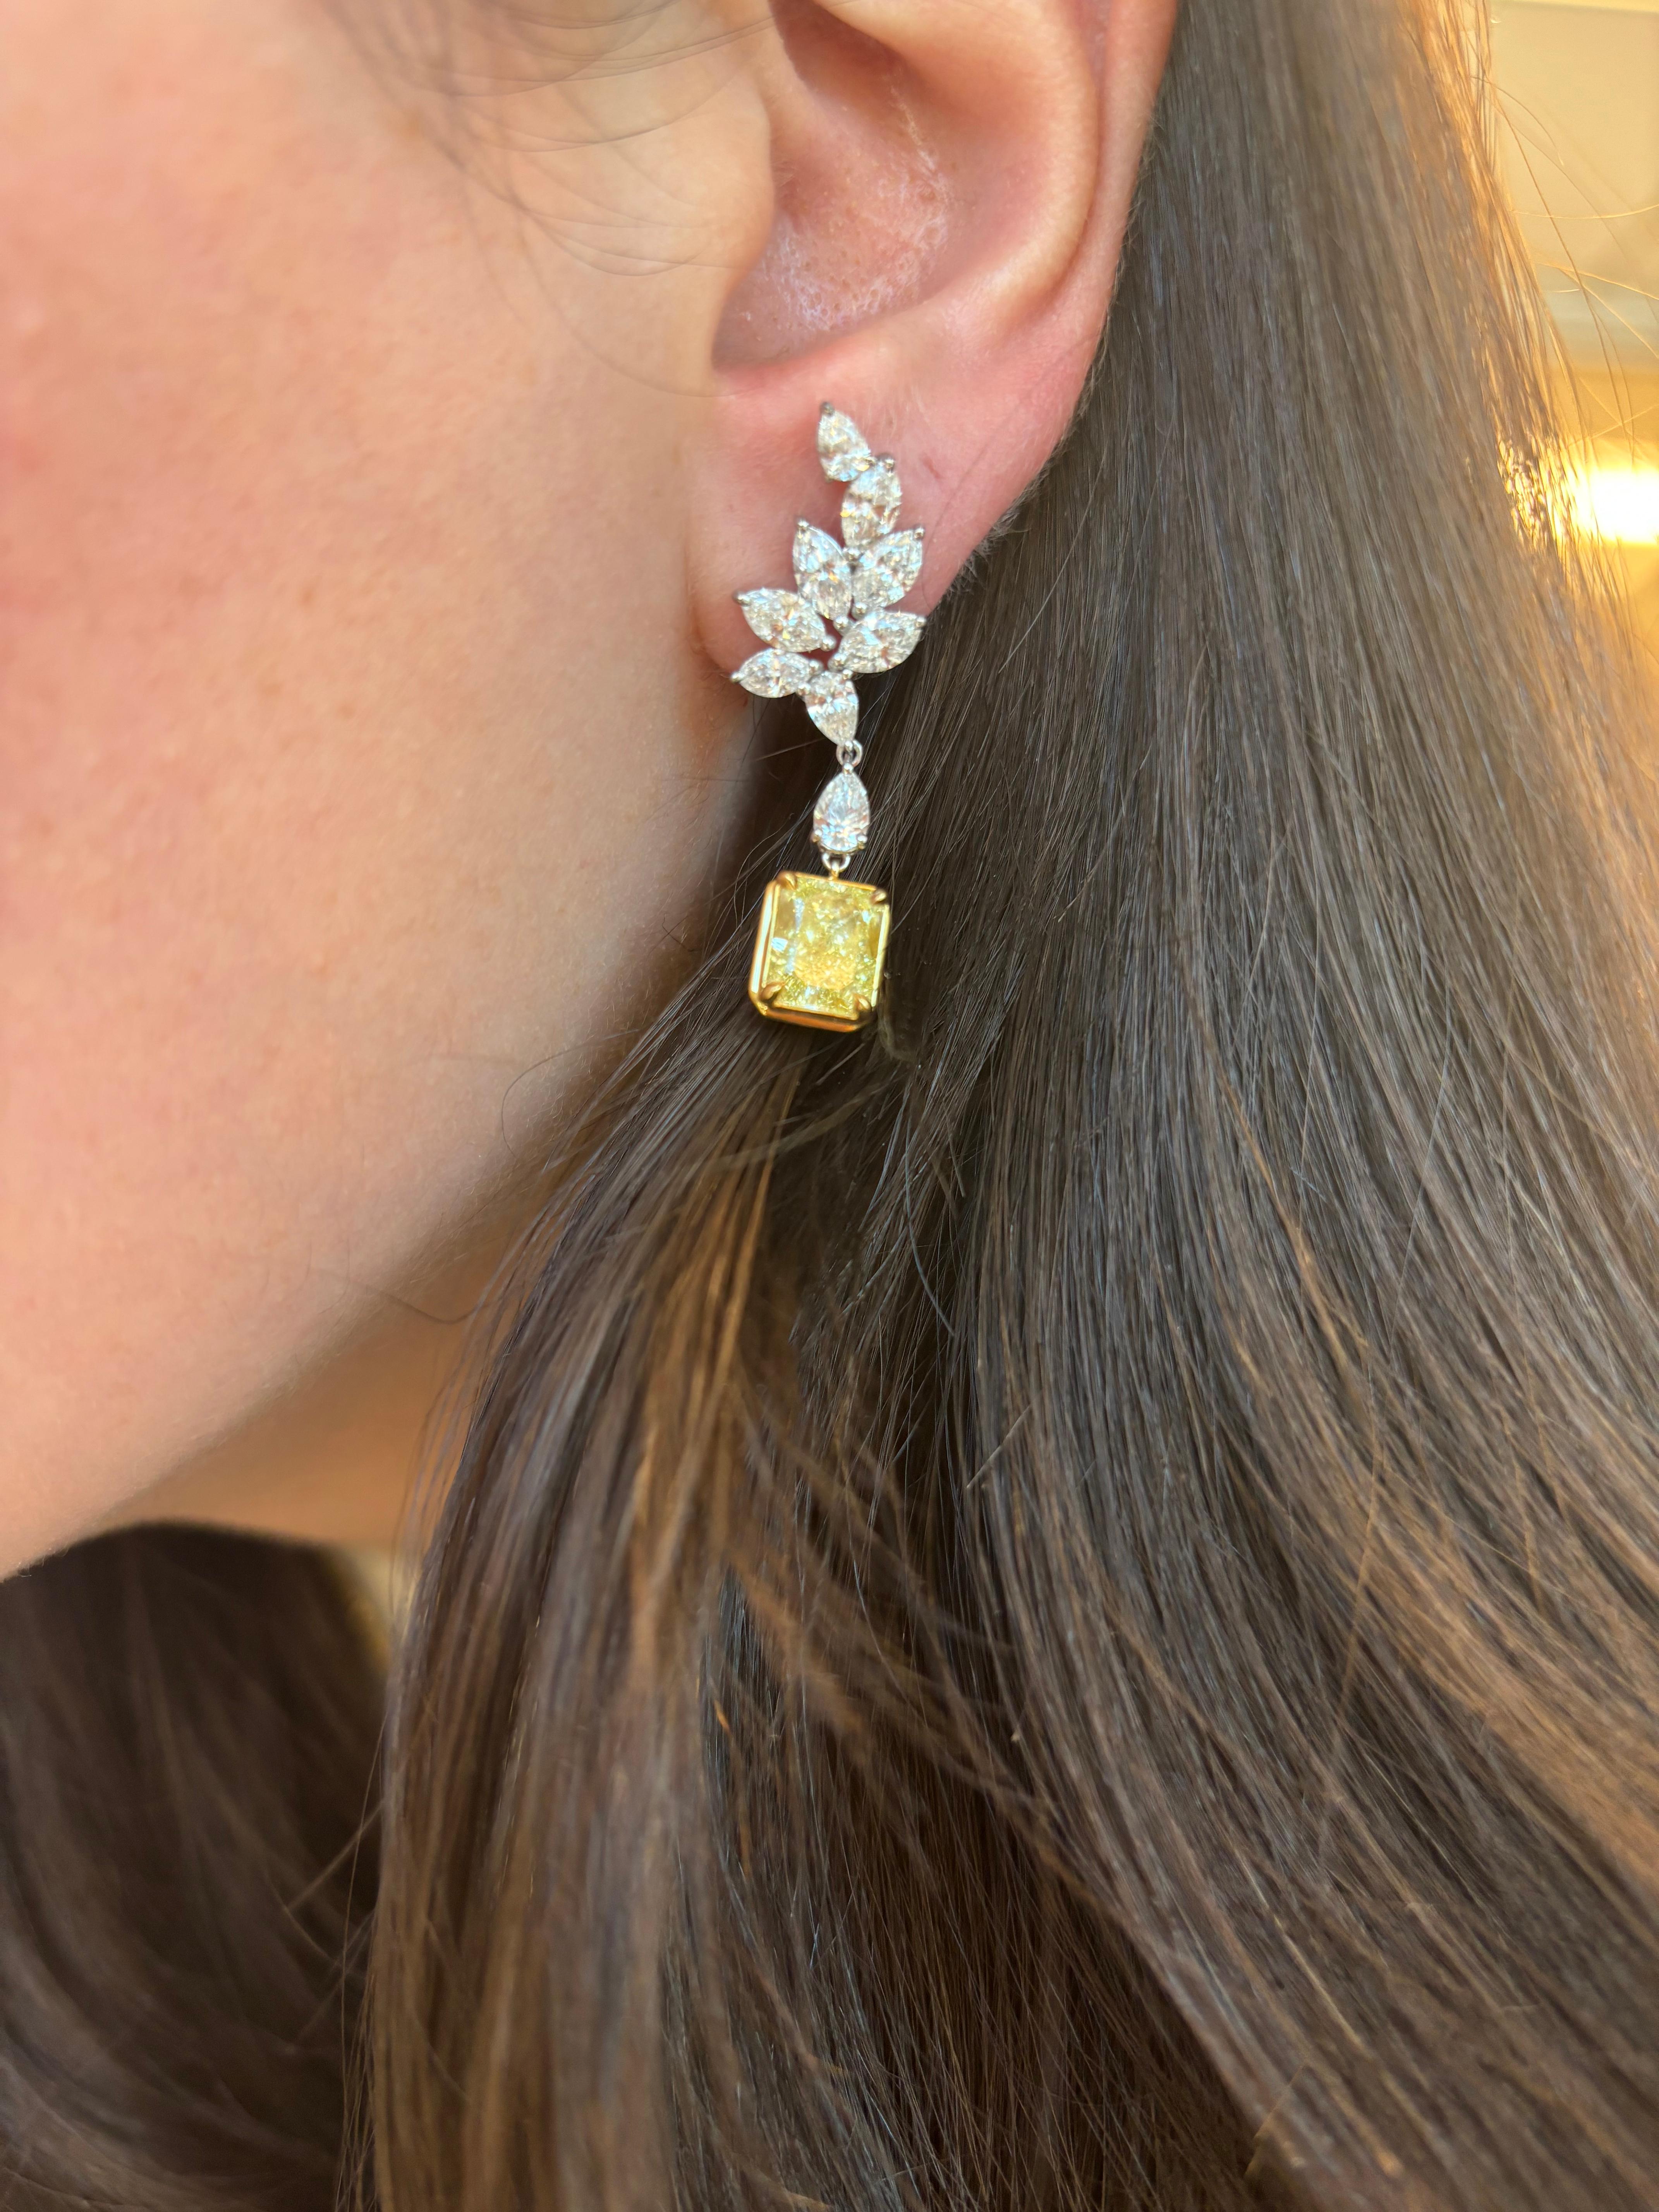 Atemberaubende fancy gelbe Diamanten (die fancy intensiv aussehen) mit Halo-Ohrringen, GIA zertifiziert. Hochwertige Schmuckstücke von Alexander Beverly Hills. 
8,40 Karat Gesamtgewicht der Diamanten. 
*Die Mittelsteine sehen in der Fassung Fancy